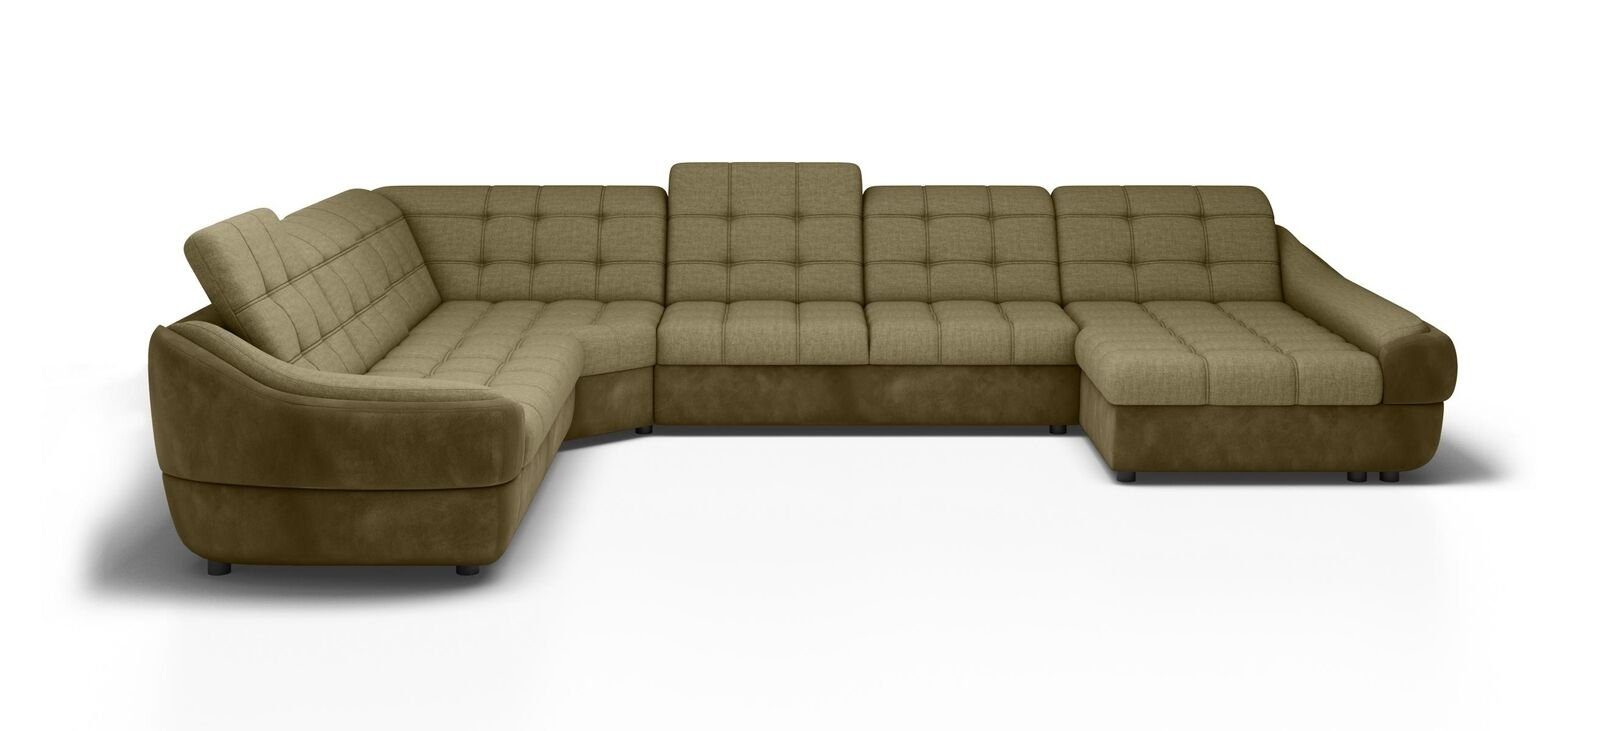 JVmoebel Ecksofa, Polster Garnitur Couch Sofa Design Ecksofa Wohnlandschaft Neu Textil